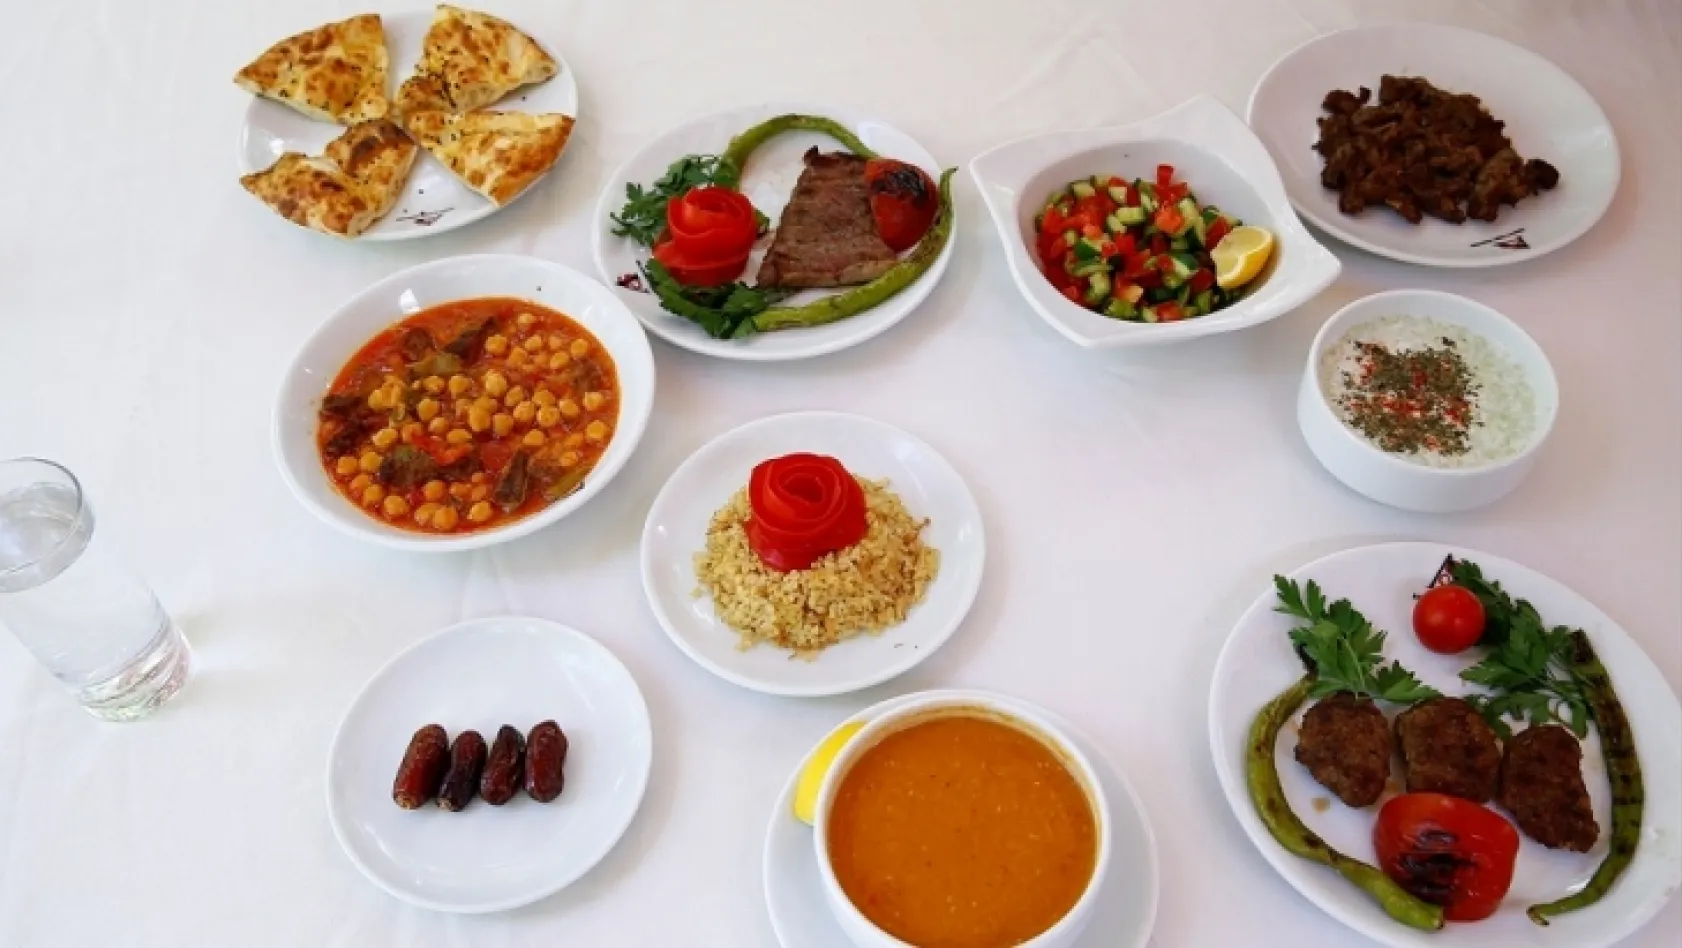 Ramazan'da doğru beslenmenin önemi